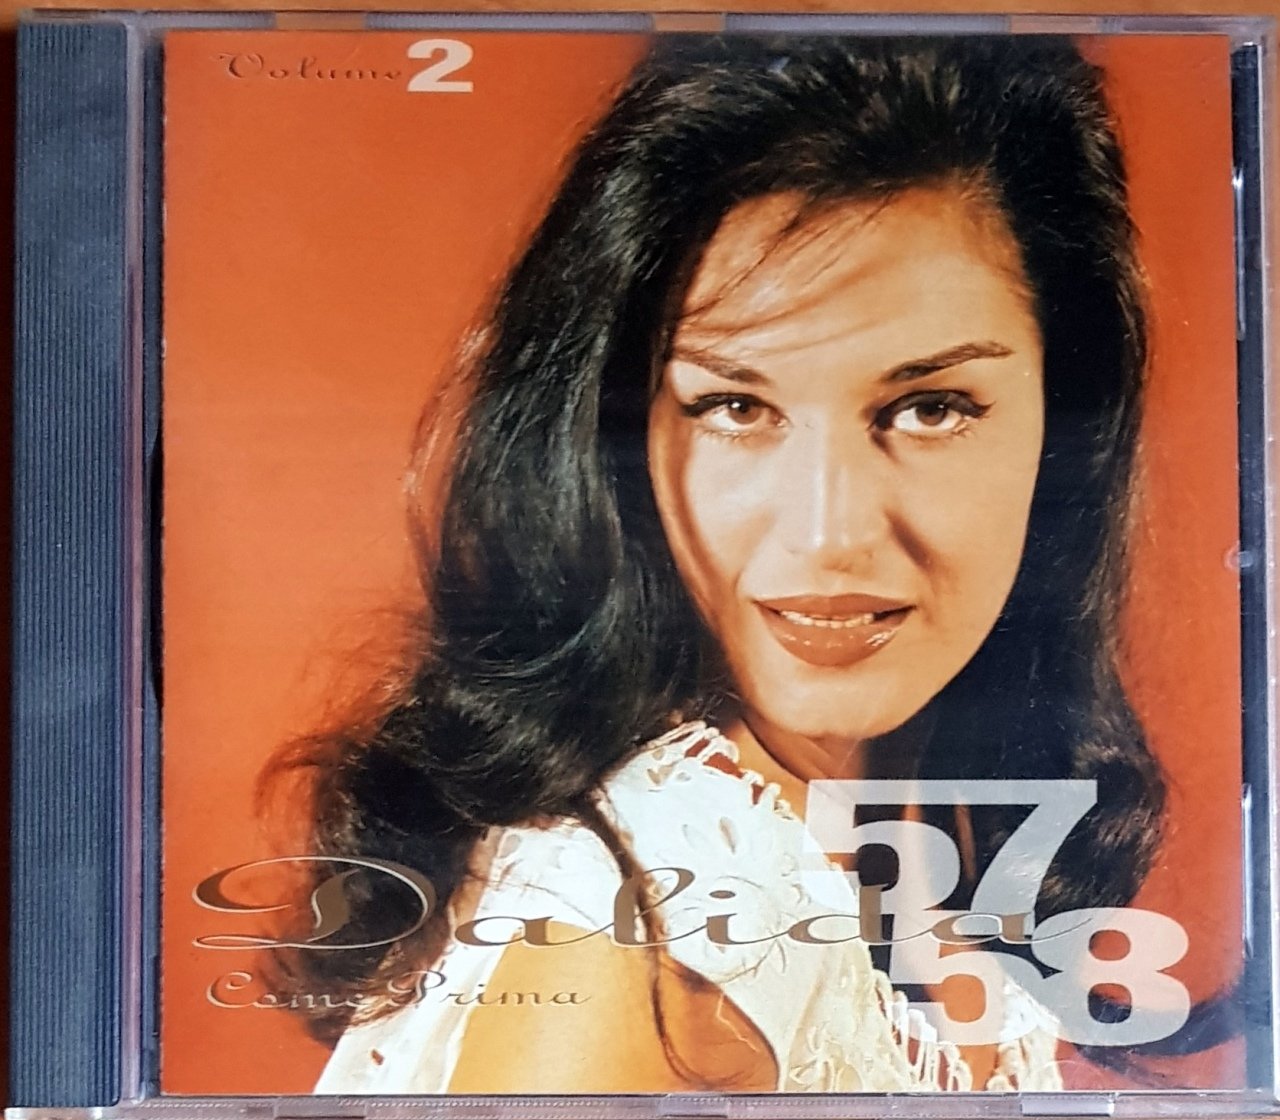 DALIDA - LES ANNES BARCLAY VOLUME 2 / COME PRIMA / 1957-1958 (1991) BARCLAY CD 2.EL